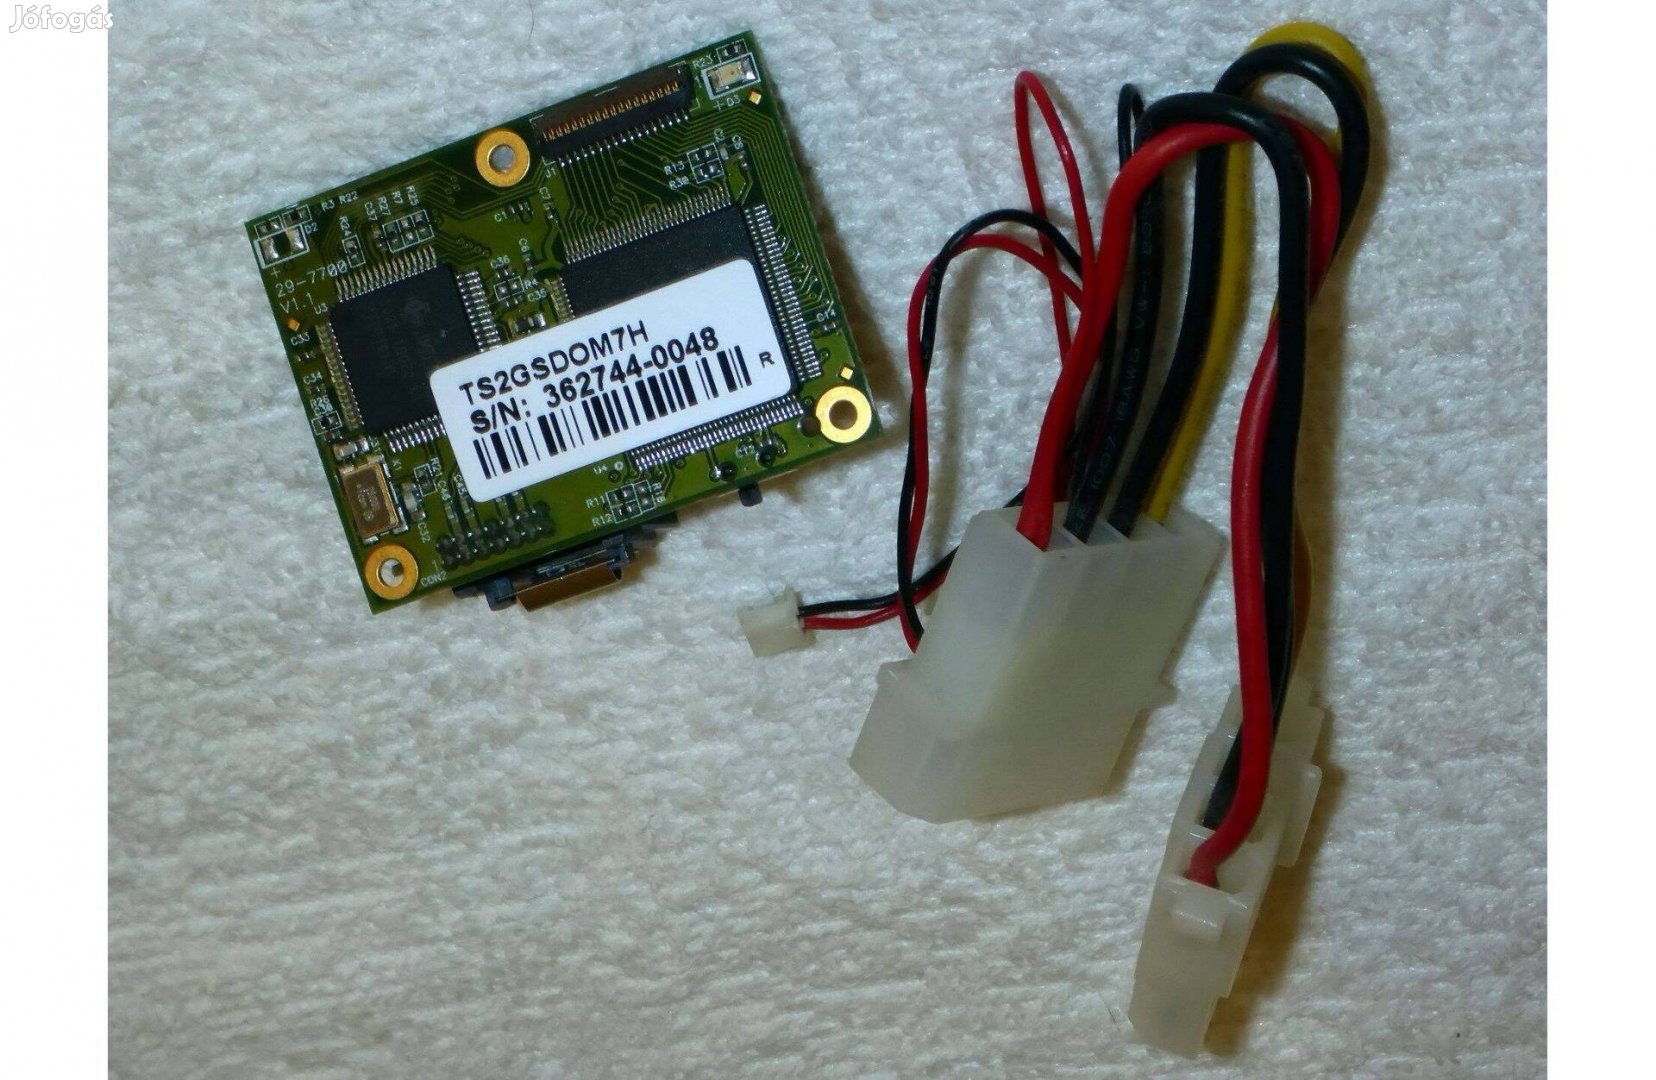 2GB SATA SSD TS2Gsdom7H rendszerindításhoz, ipari alkalmazásokhoz